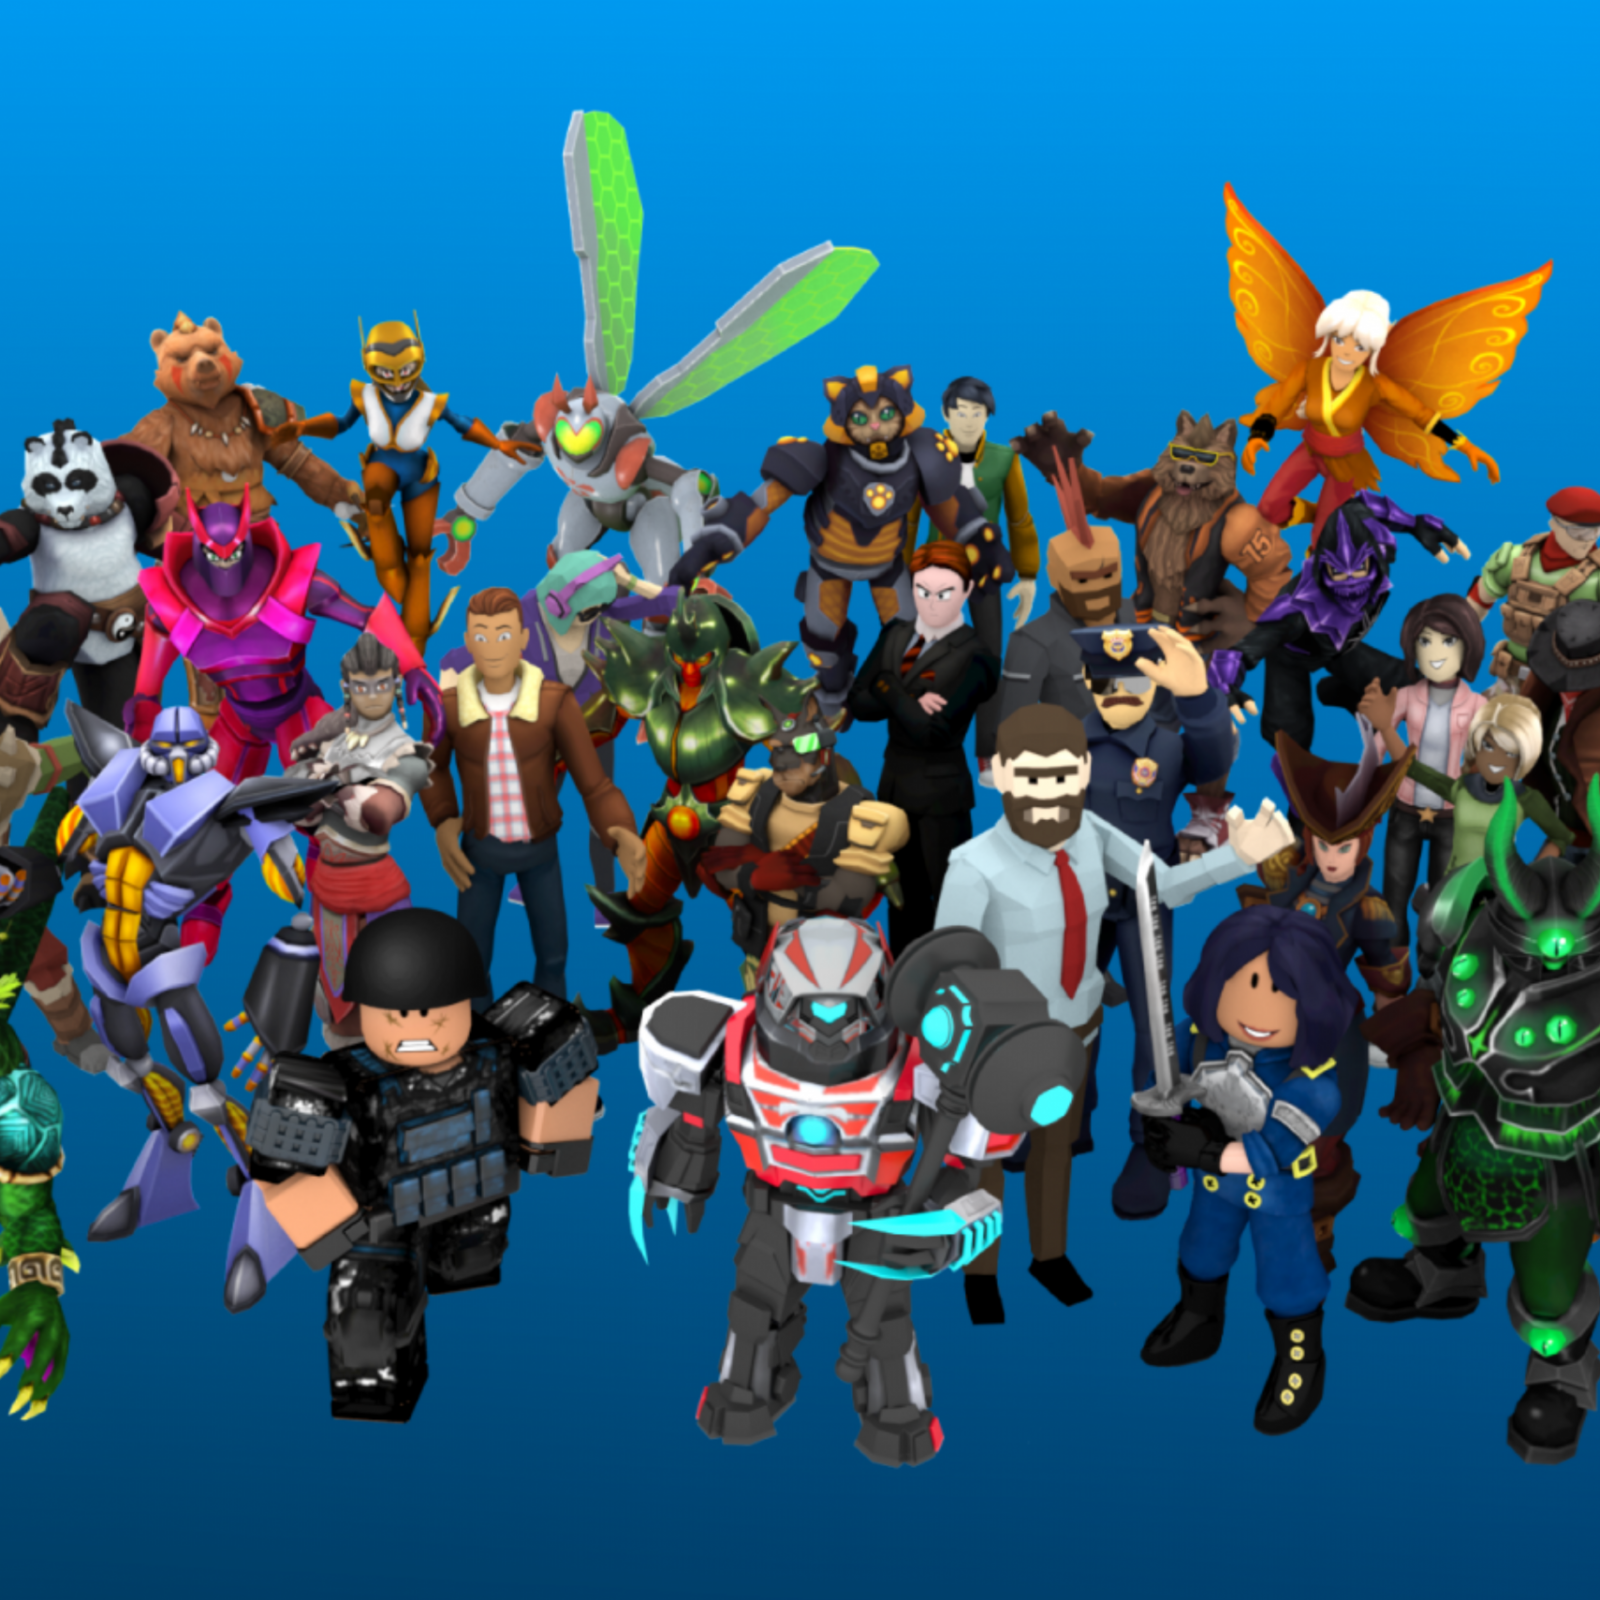 Sự cập nhật về avatar trong Roblox luôn được hãng cập nhật thường xuyên để người chơi luôn có những lựa chọn mới và độc đáo. Hãy cùng trải nghiệm những nội dung mới nhất về bộ sưu tập avatar đa dạng và sáng tạo nhất.